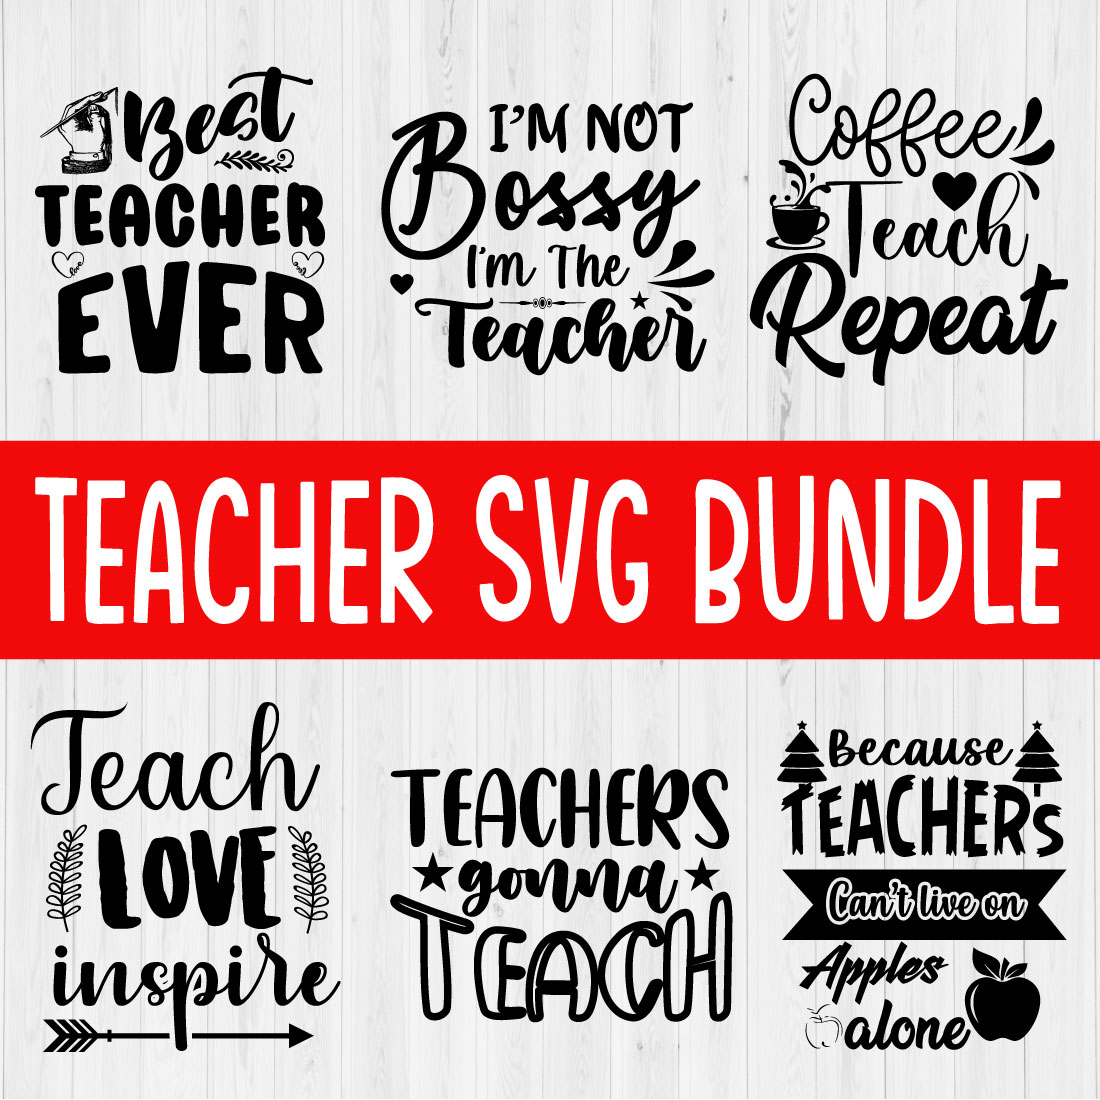 Teacher Svg Design Bundle Vol2 preview image.